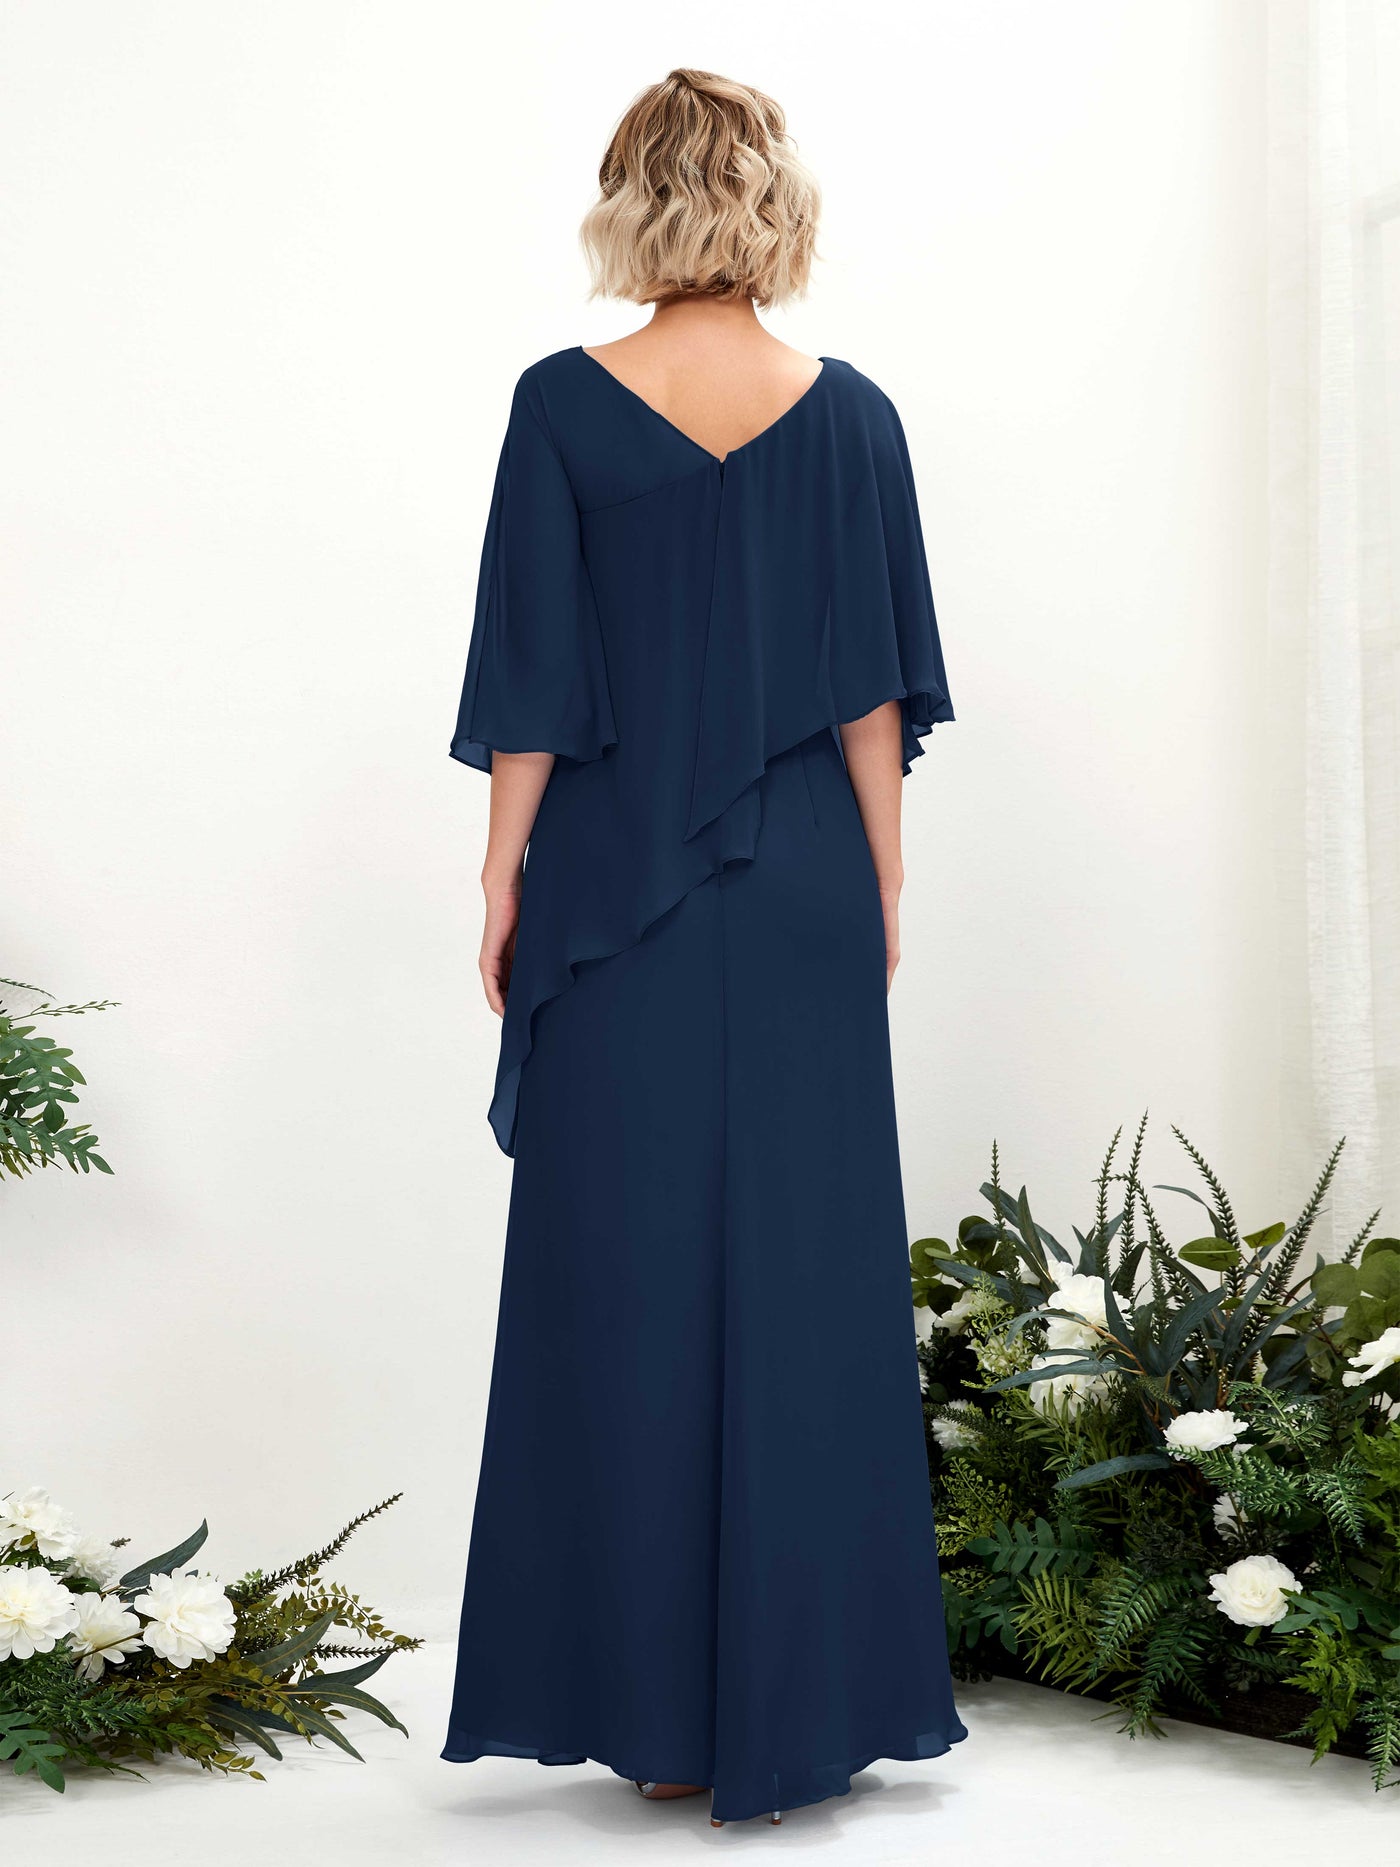 V-neck 3/4 Sleeves Chiffon Bridesmaid Dress  (81222513)#color_navy